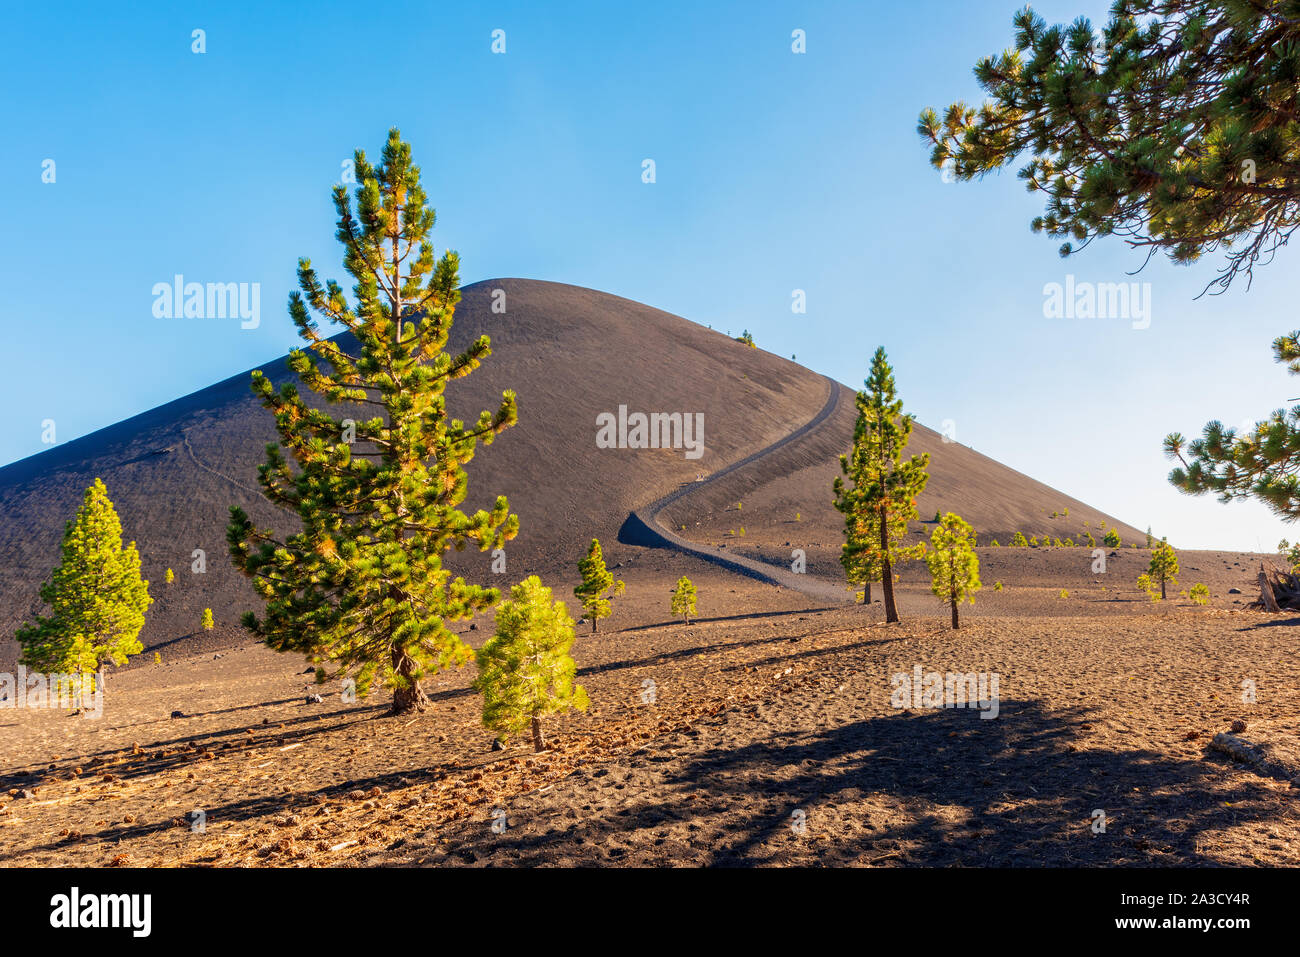 En cône de cendres volcaniques Lassen National Park, California, USA Banque D'Images